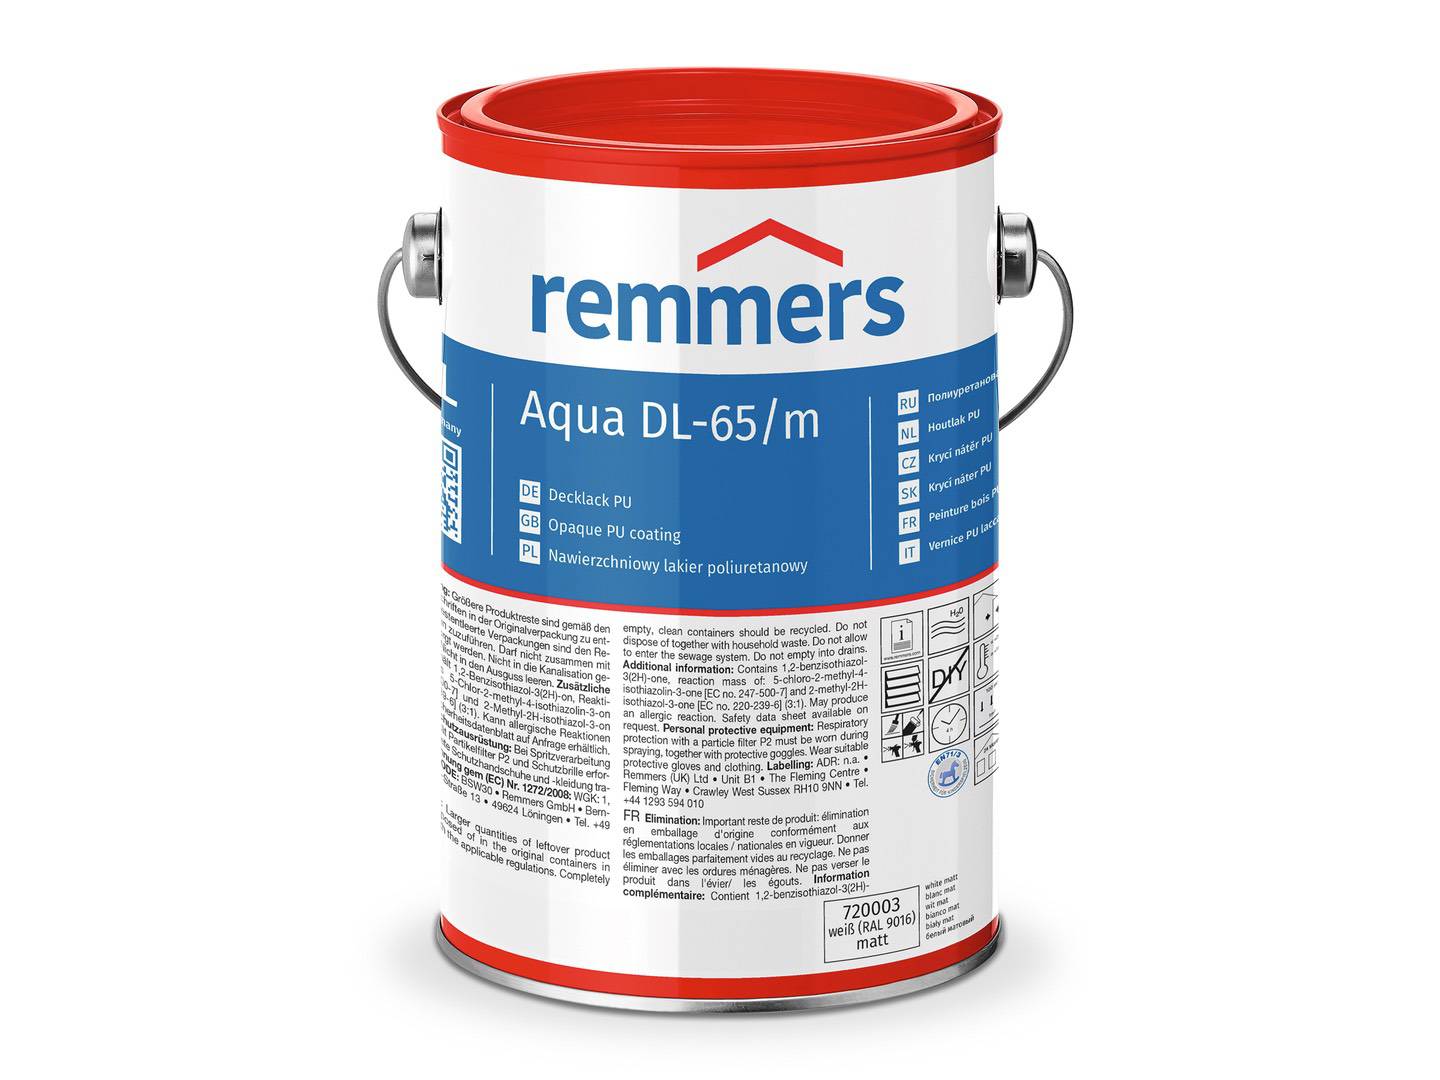 REMMERS Aqua DL-65-Decklack PU weiß (RAL 9016) matt 2,50 l